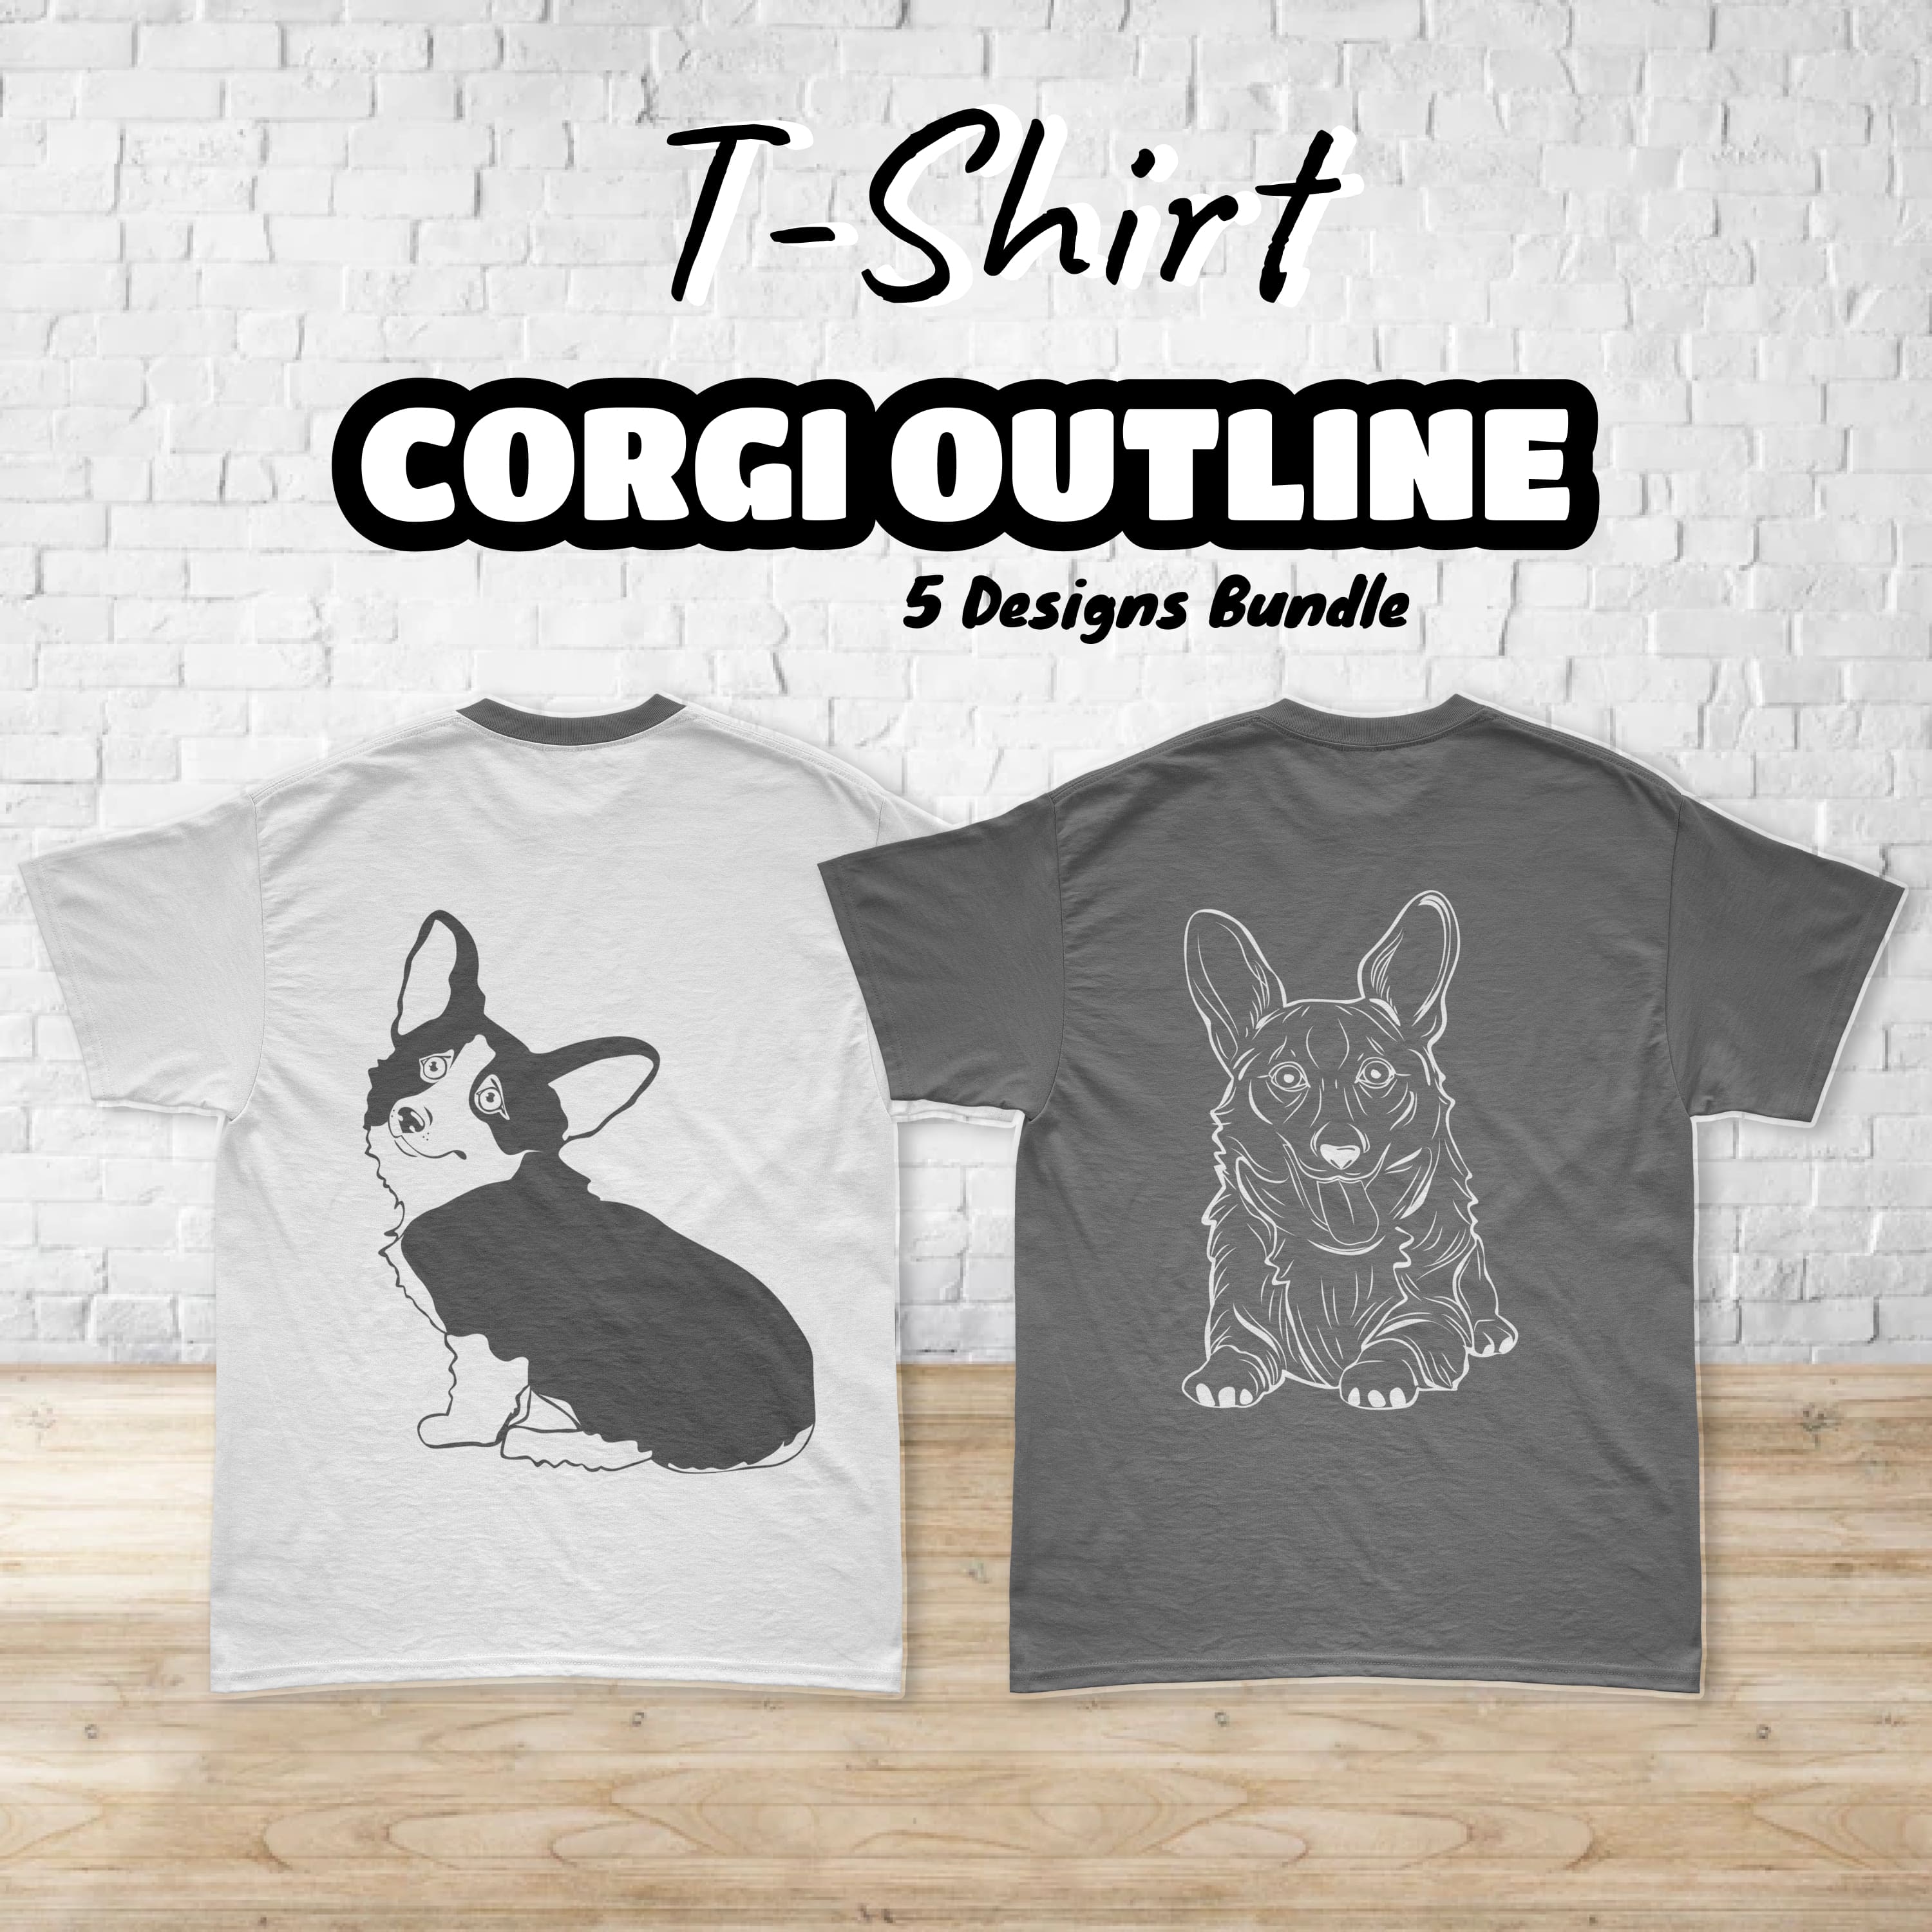 corgi outline T-shirt Designs Bundle cover.